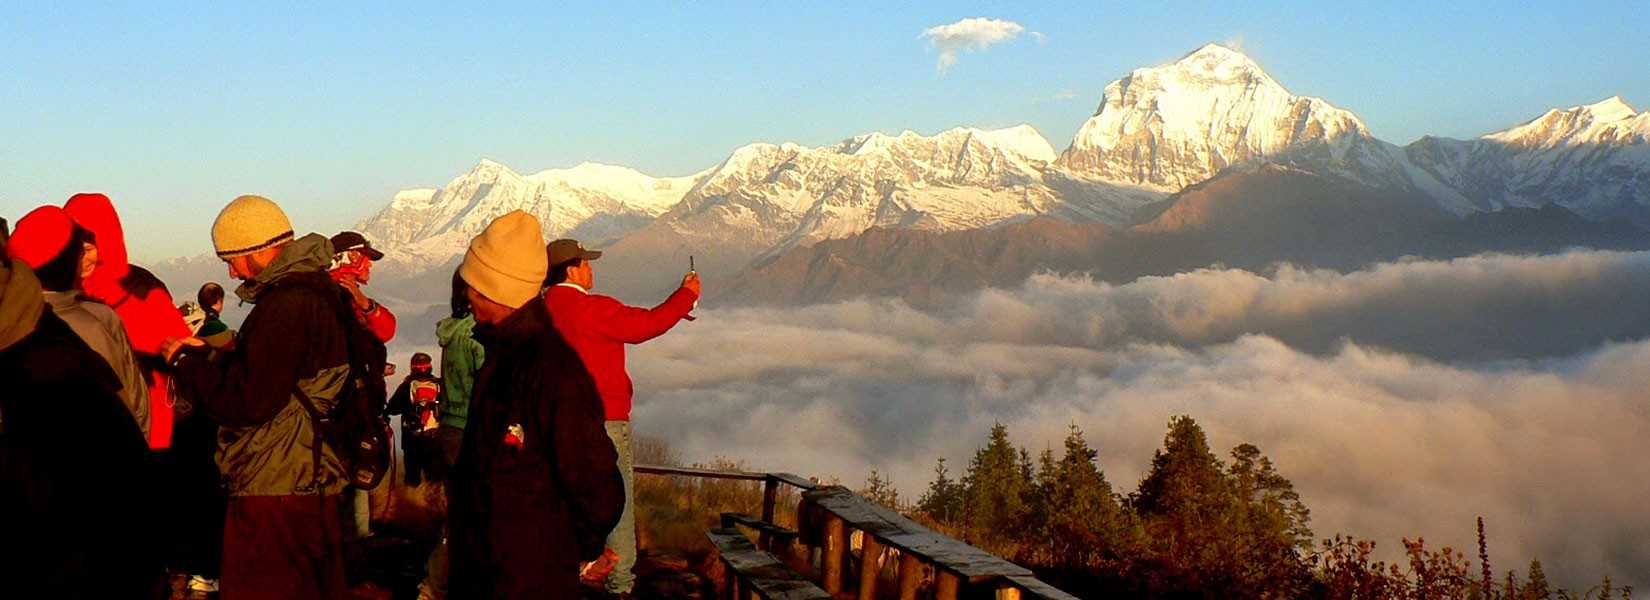 Покхара. путеводитель по непалу